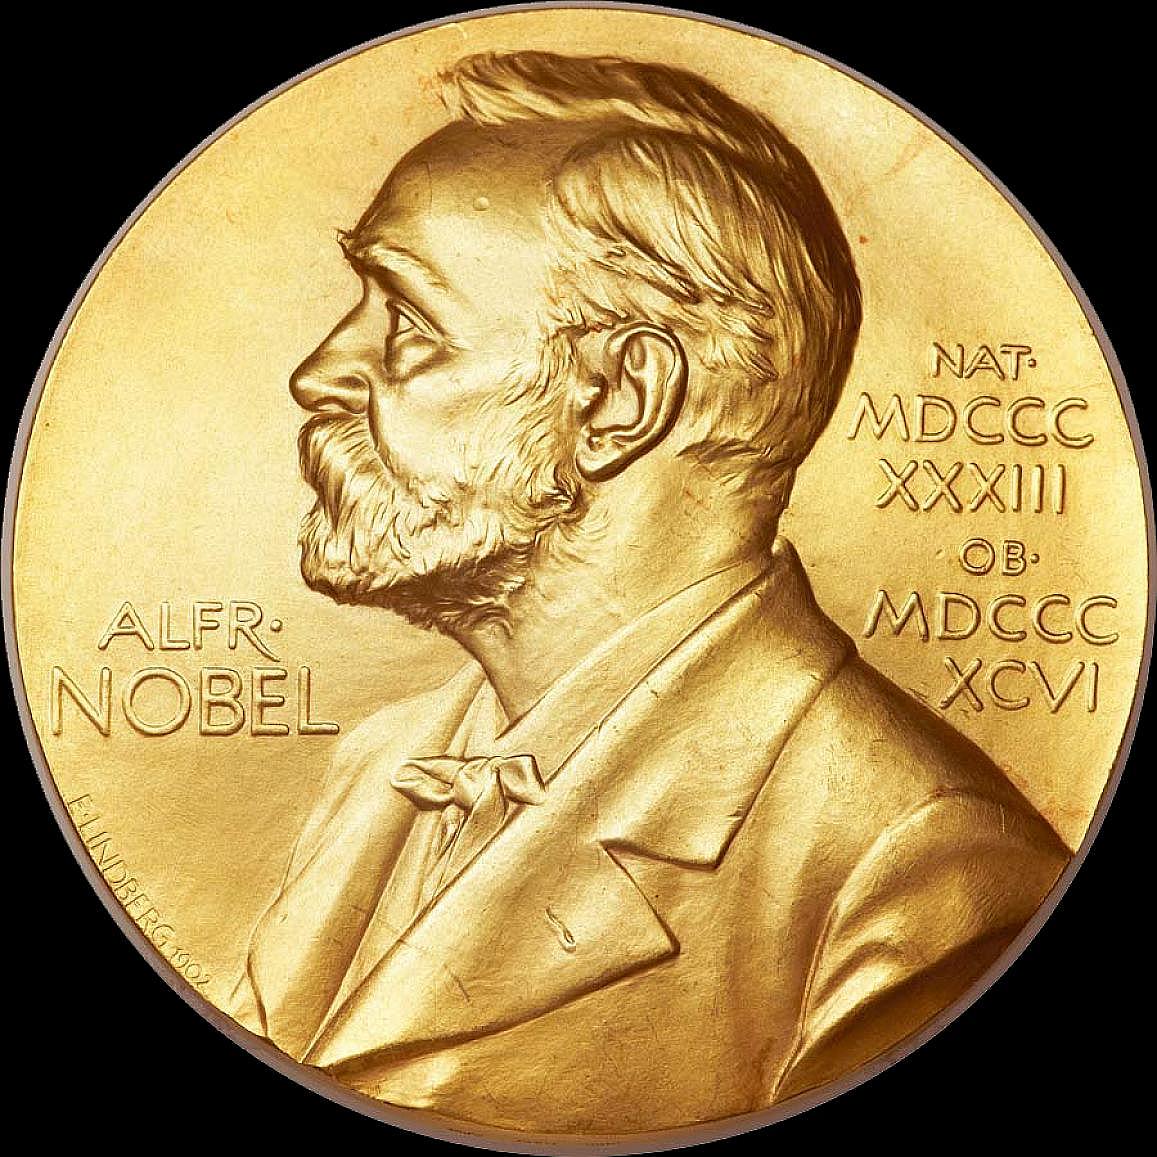 Nobel Prizes of 2023